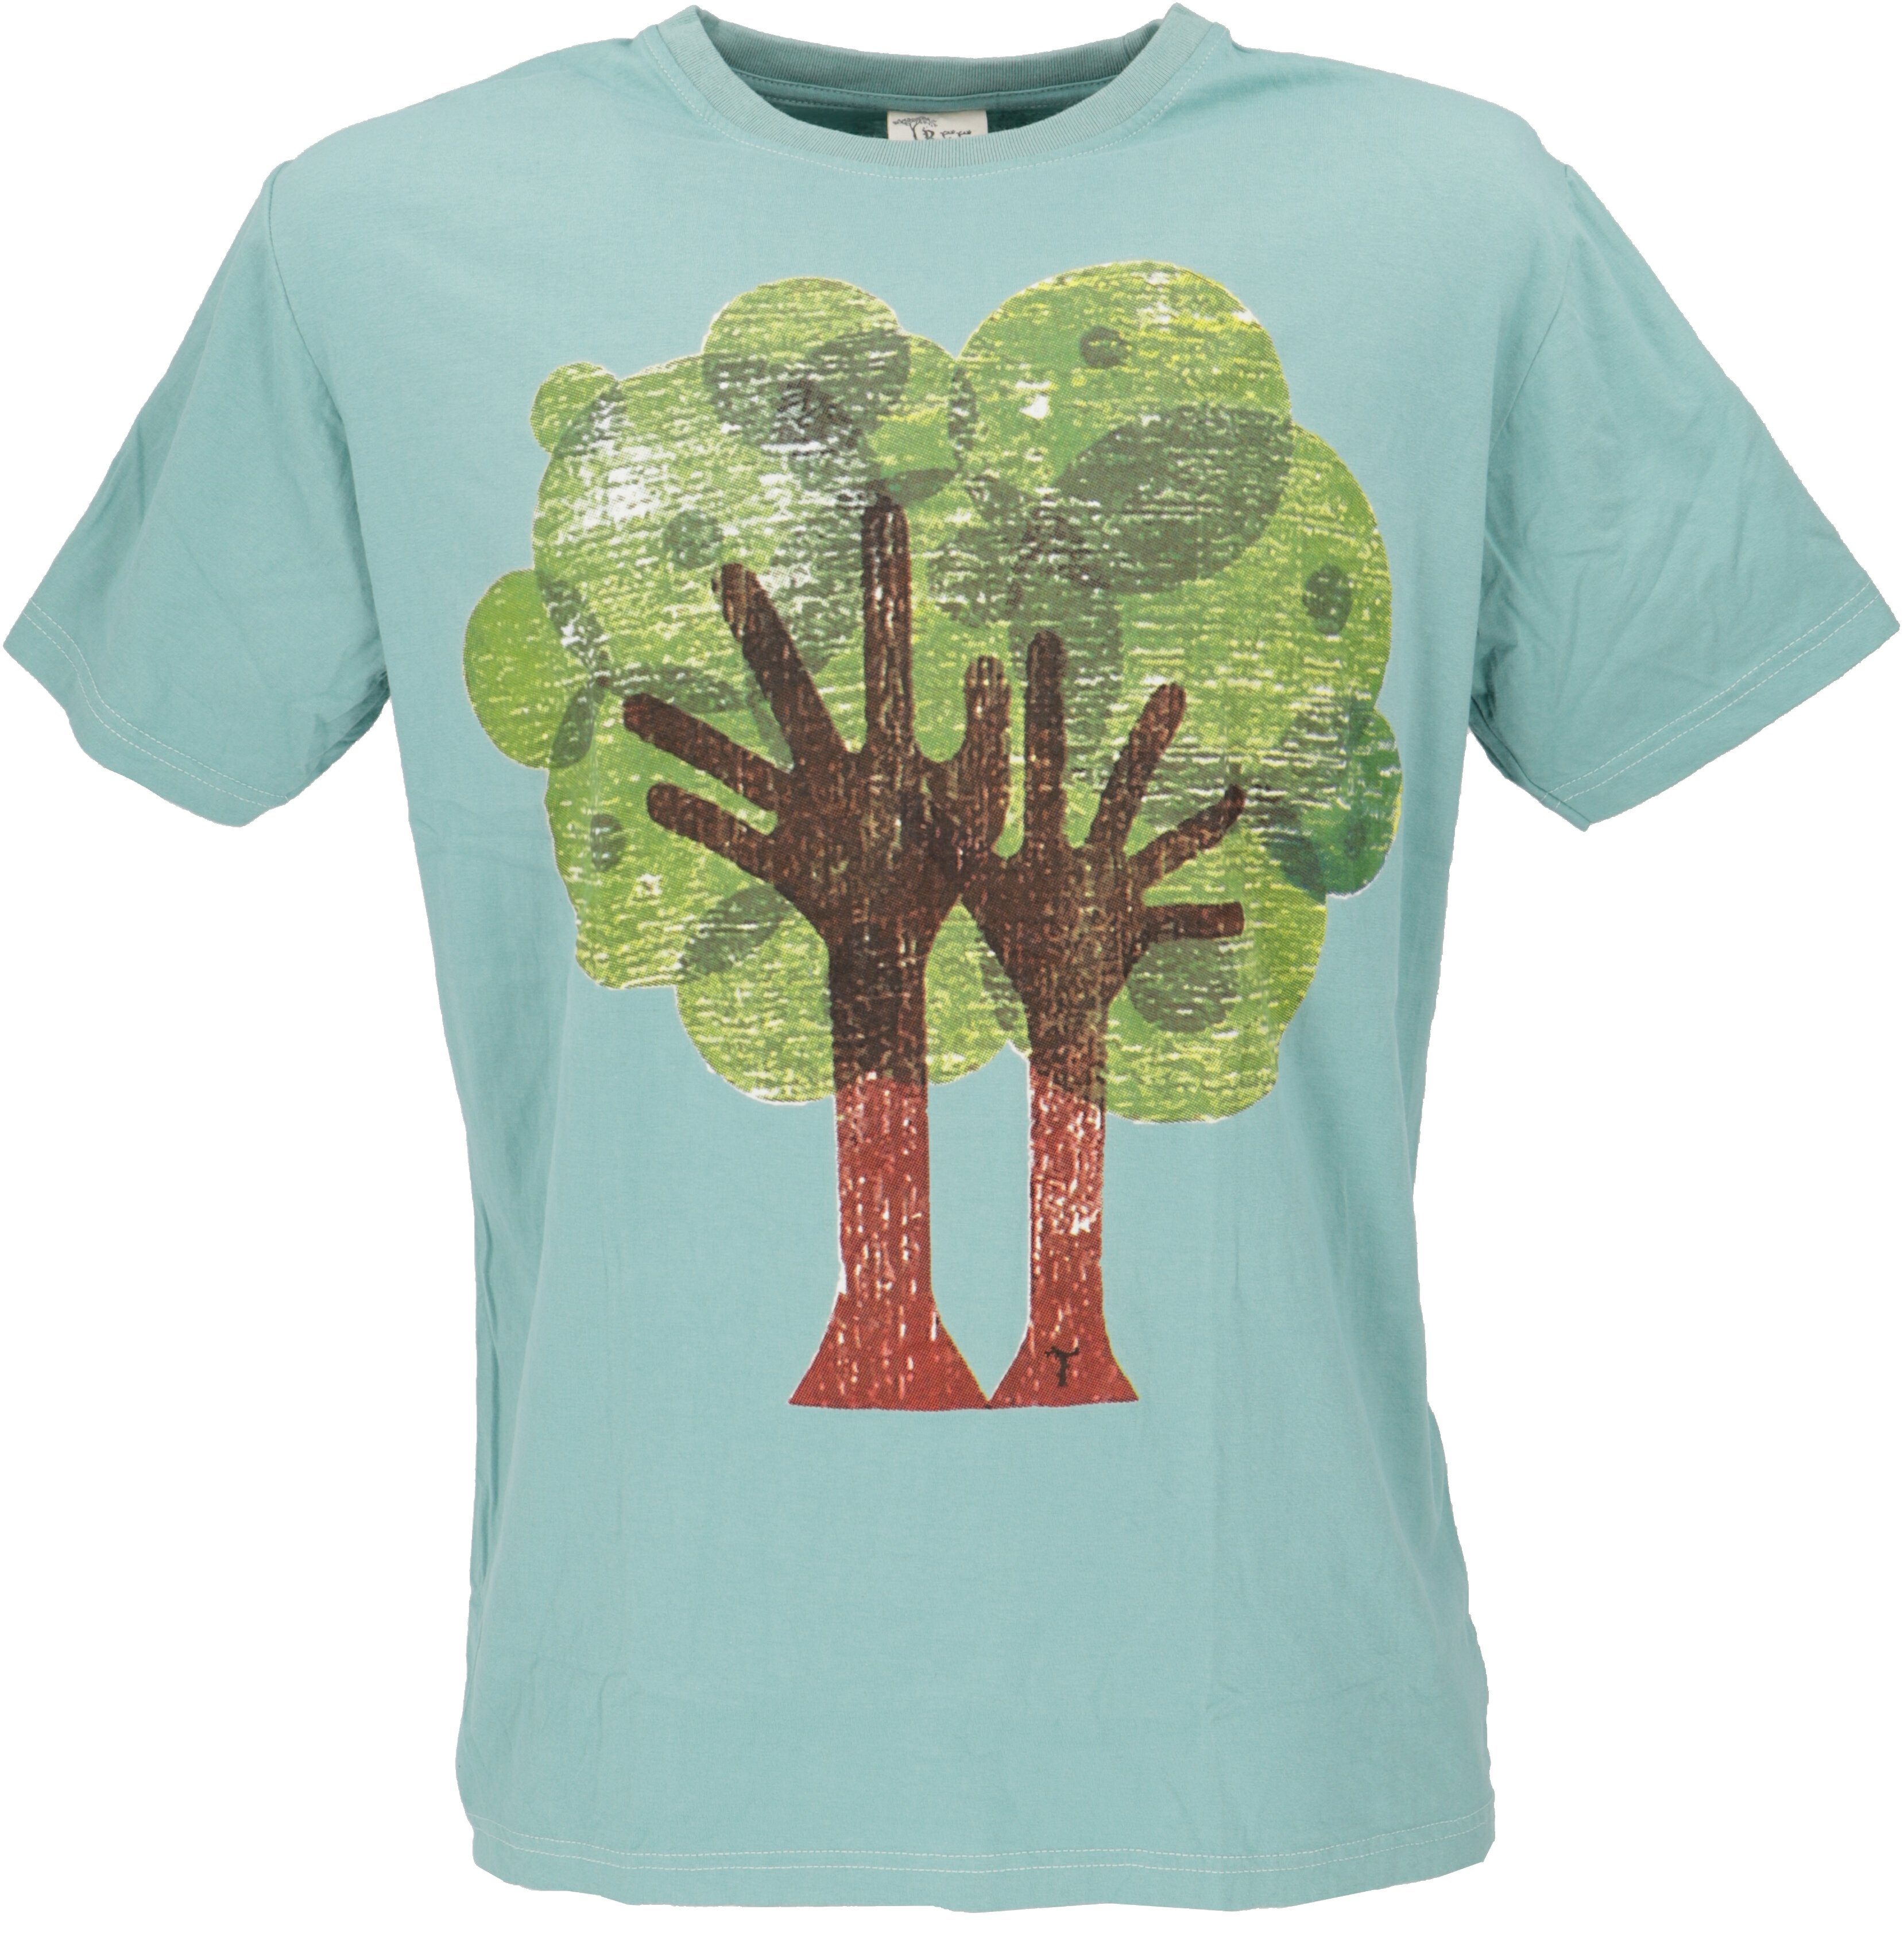 Guru-Shop T-Shirt save T-Shirt Retro earth T-Shirt, Tree/aqua Retro -.. Tree